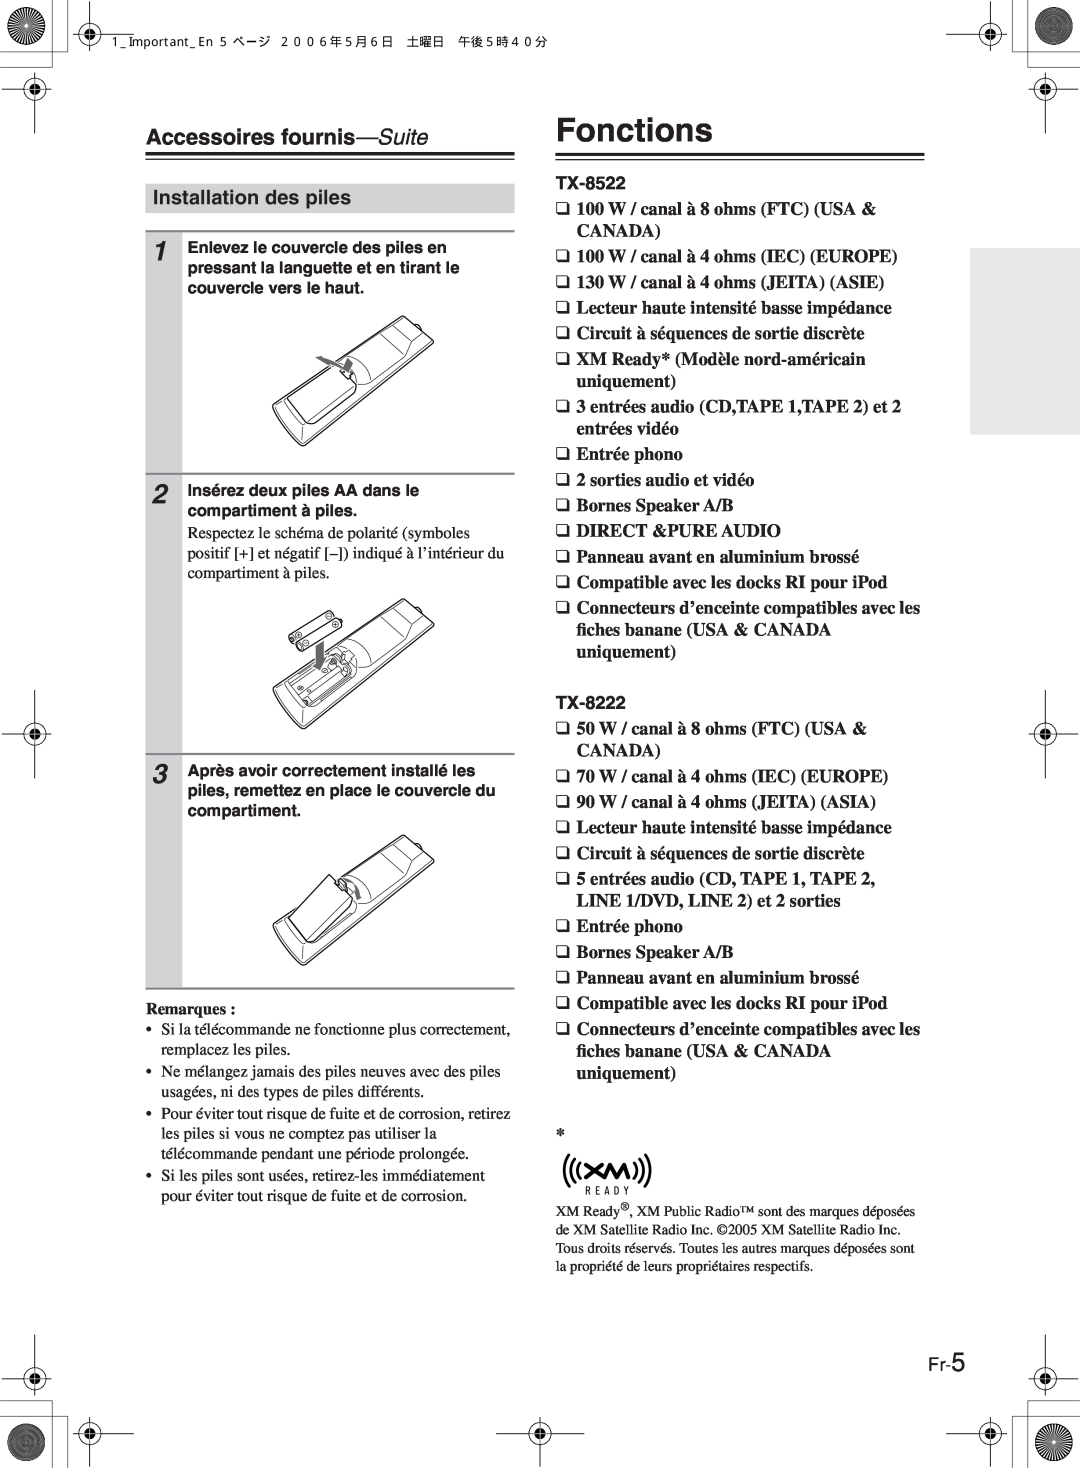 Onkyo TX-8522 manual Fonctions, Accessoires fournis—Suite, Installation des piles, TX-8222 